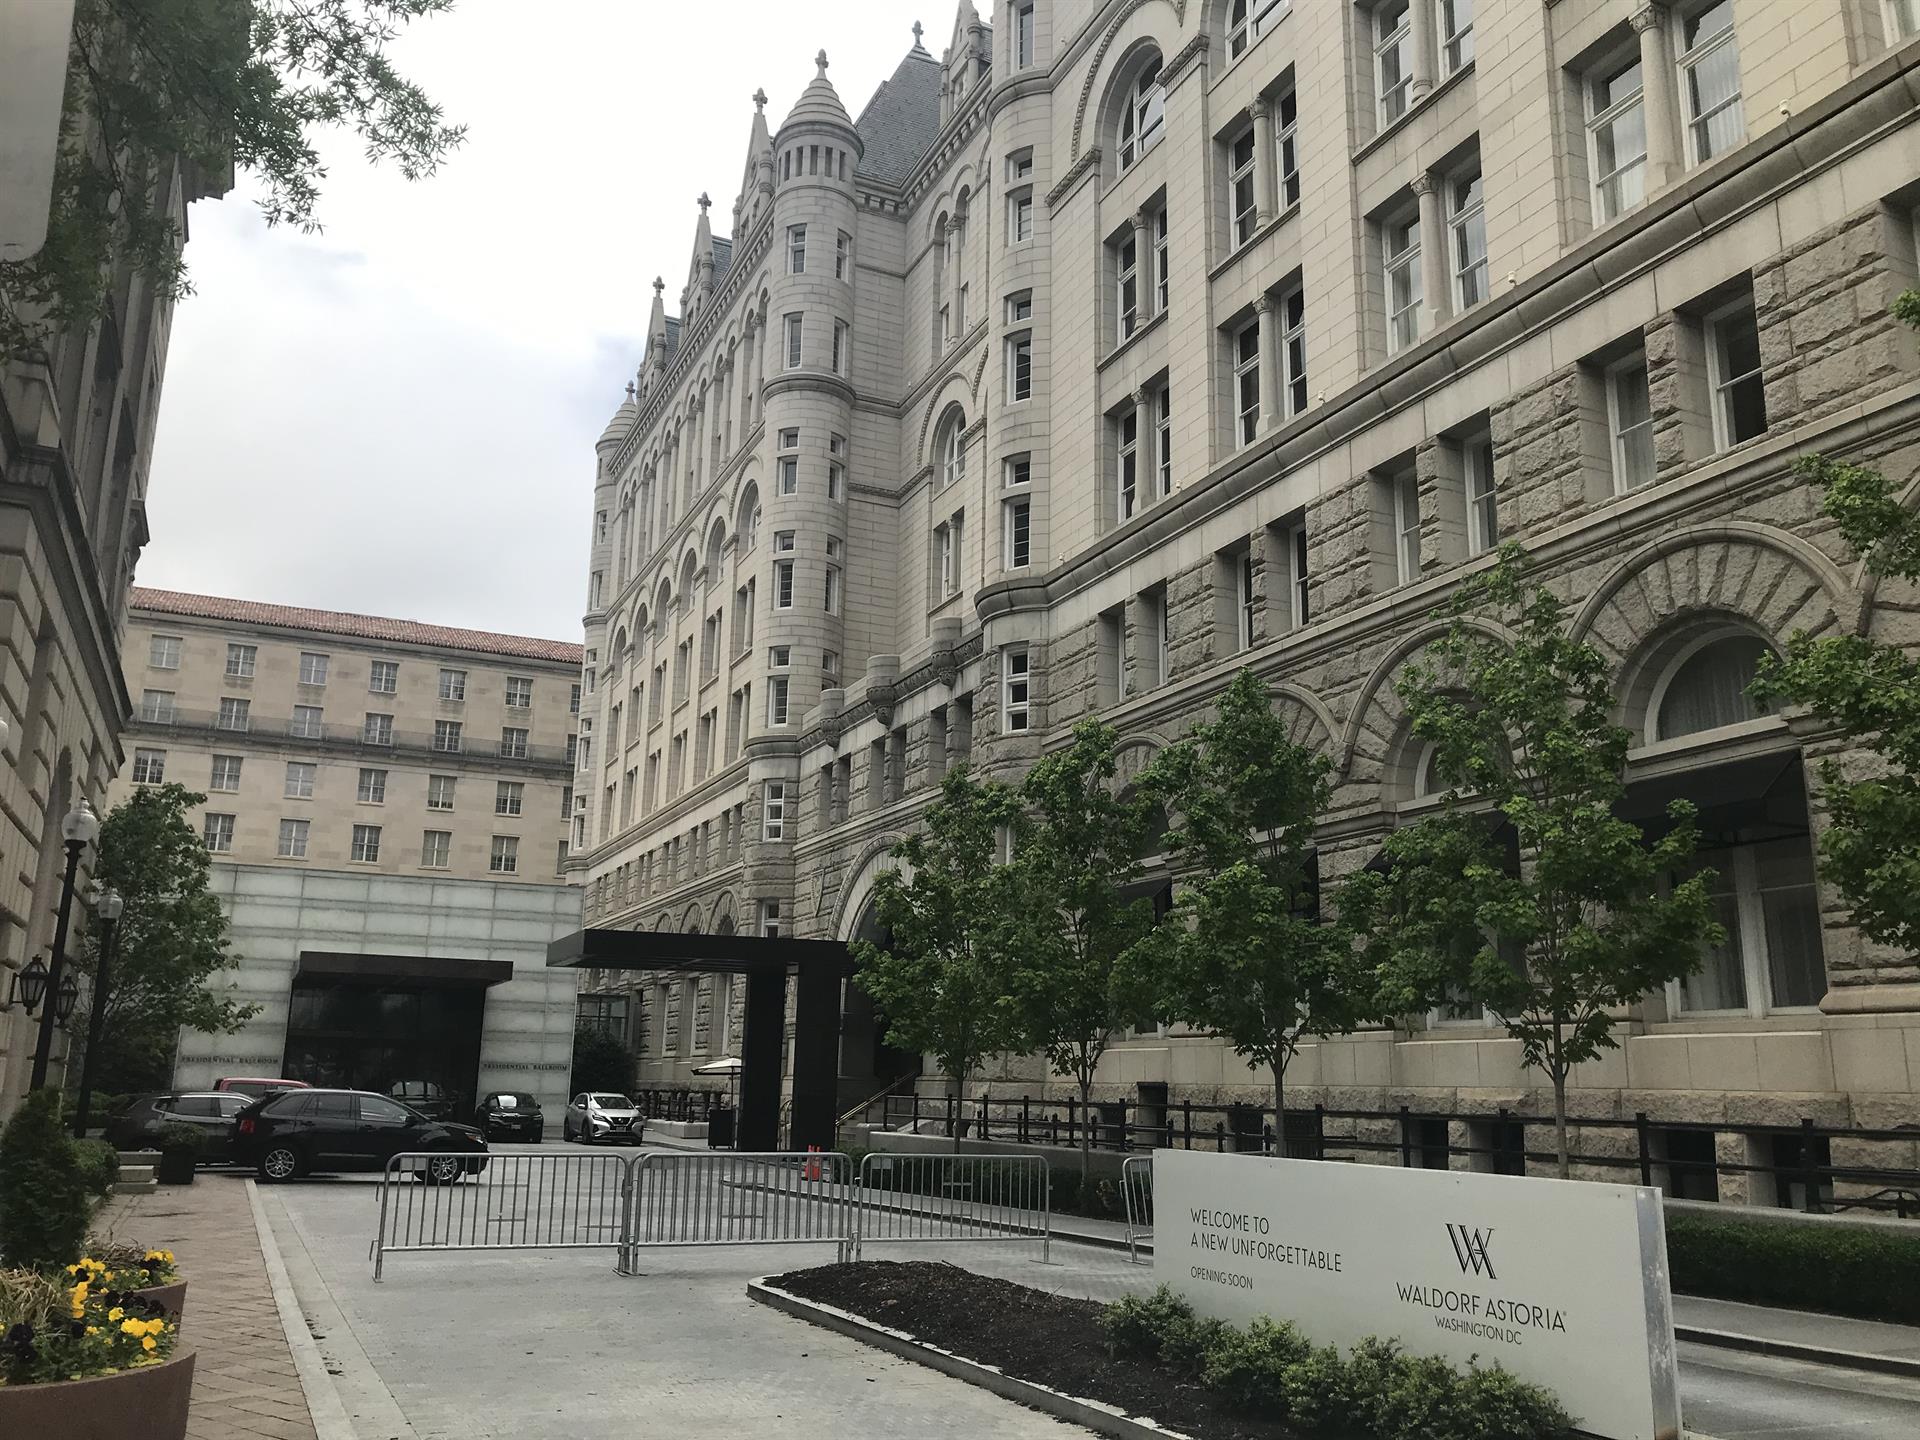 Vista de la parte trasera del Trump International Hotel de Washington con la nueva pancarta con el nombre de Waldorf Astoria. EFE/Susana Samhan
